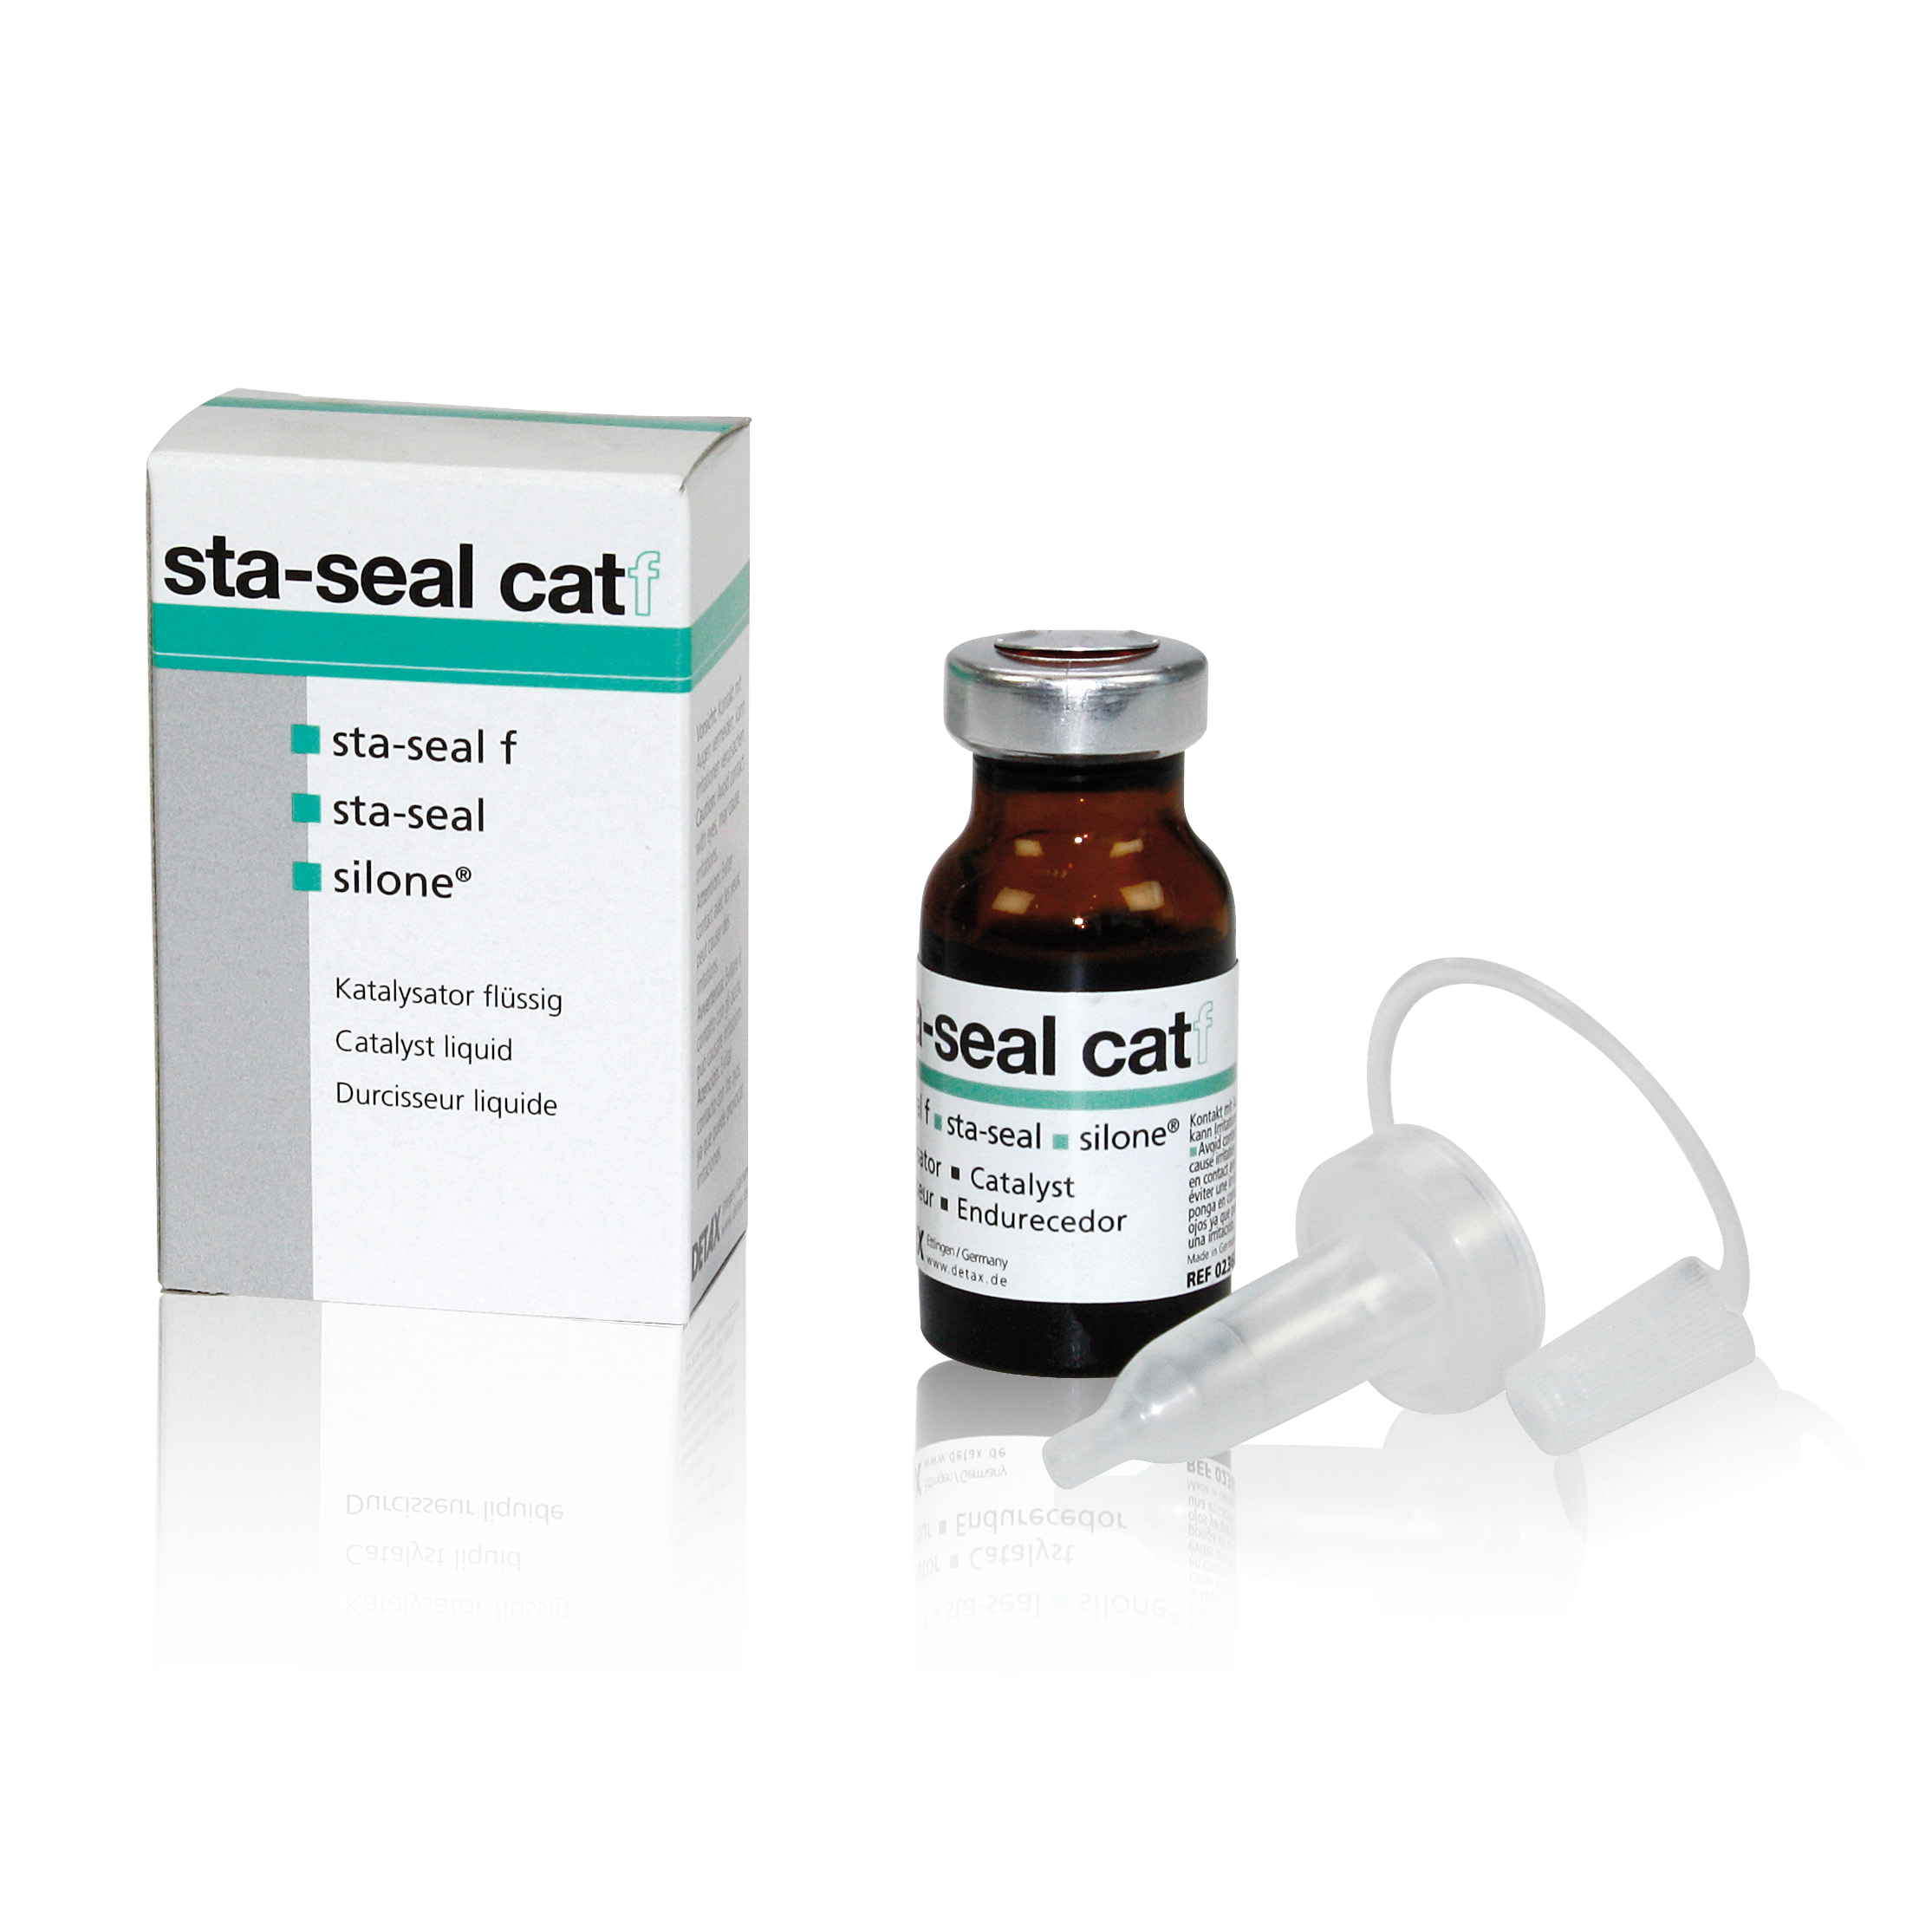 sta-seal catf Härterflüssigkeit | 10 ml